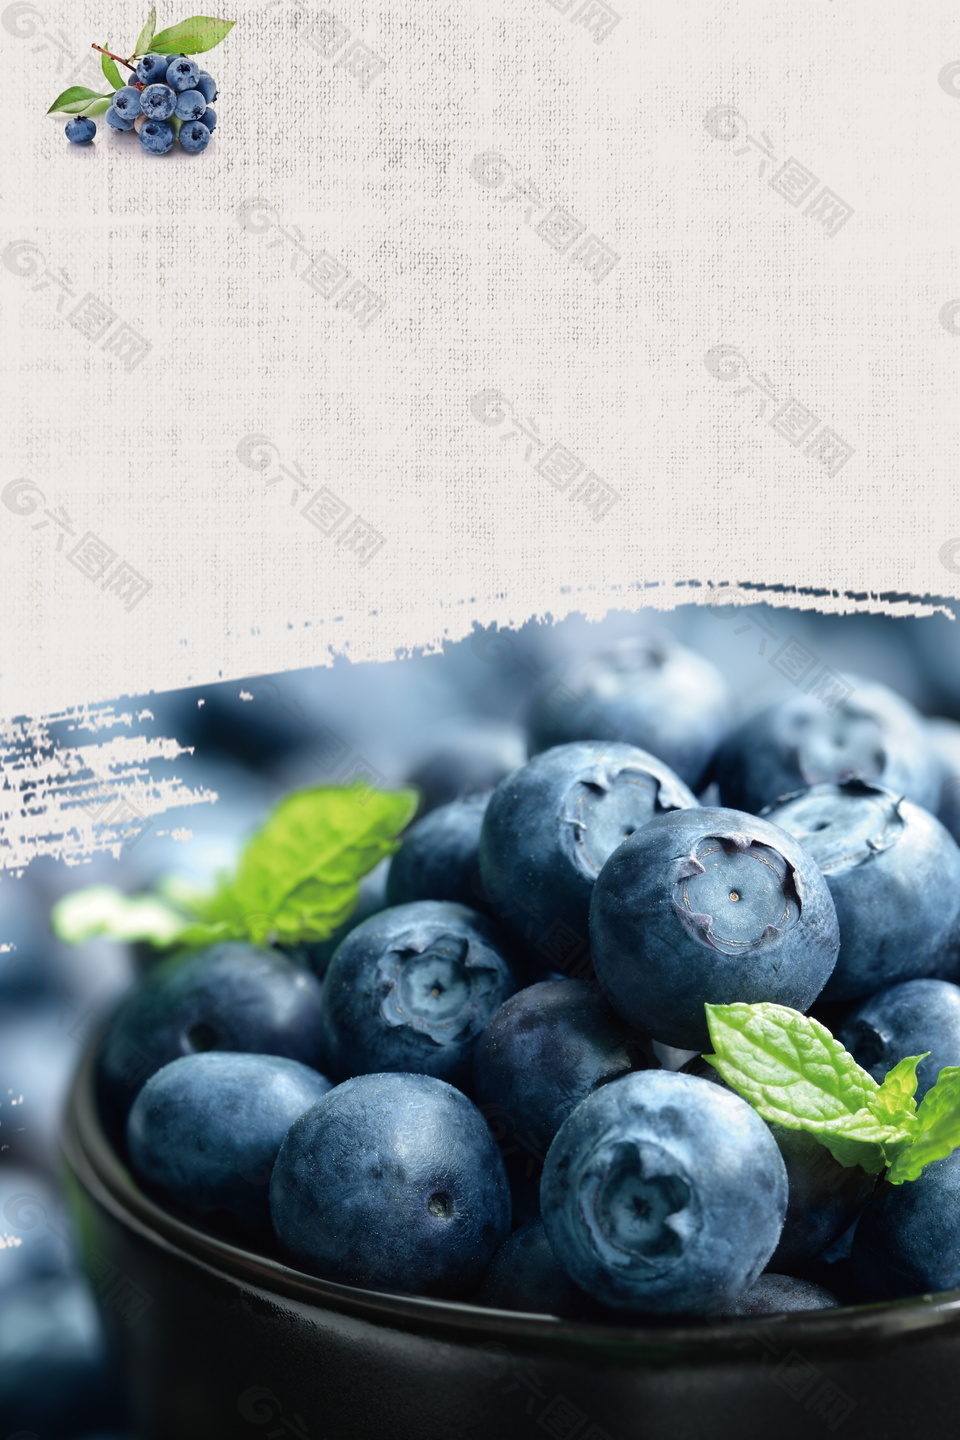 水果蓝莓简约广告背景素材